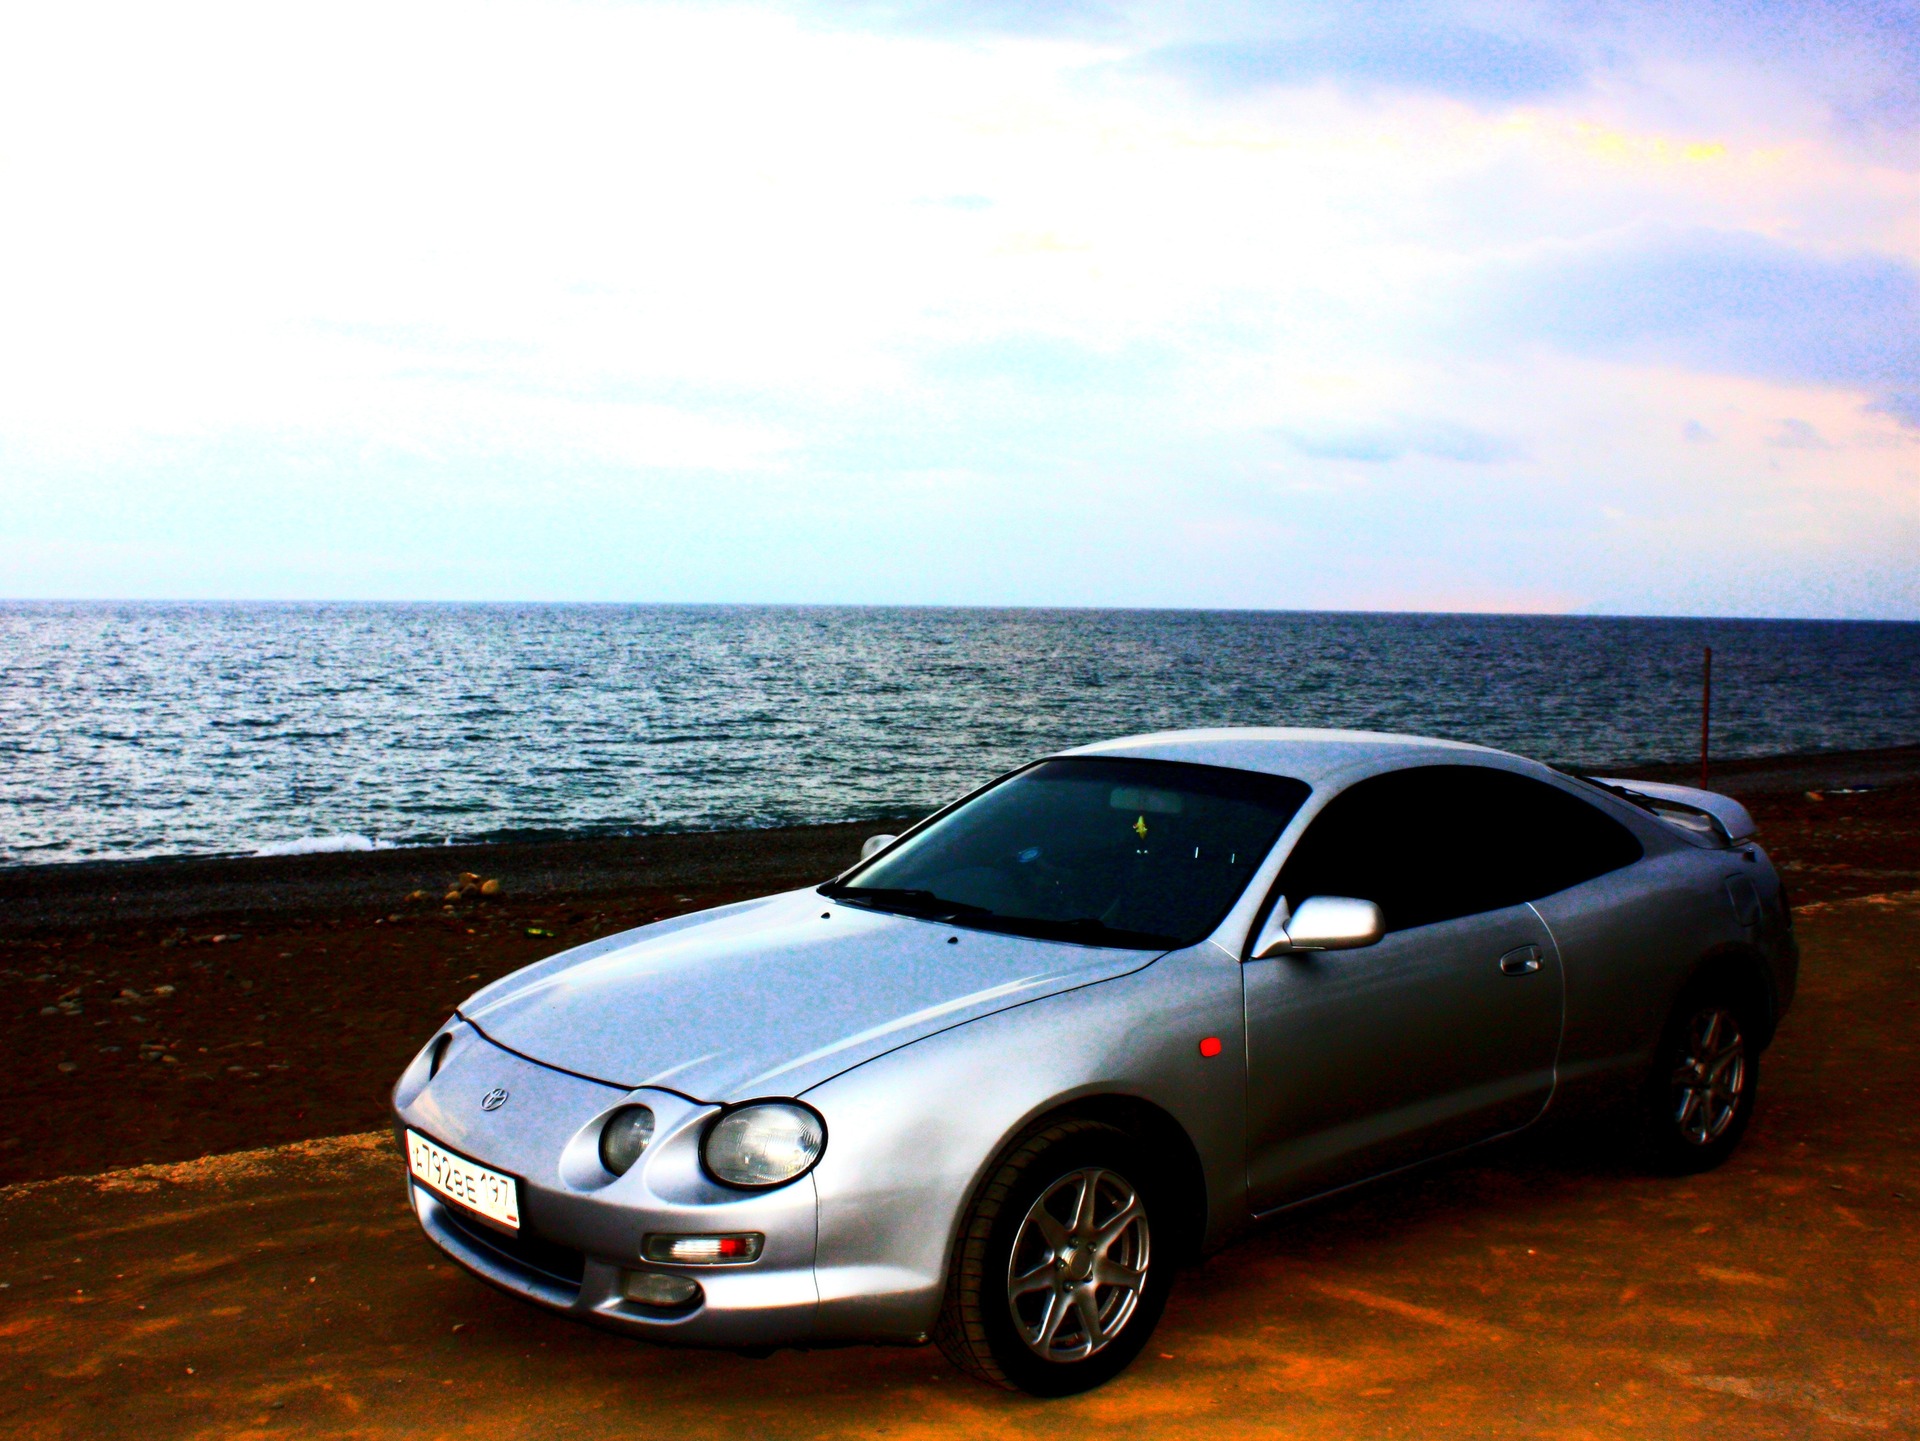   Toyota Celica 20 1997 